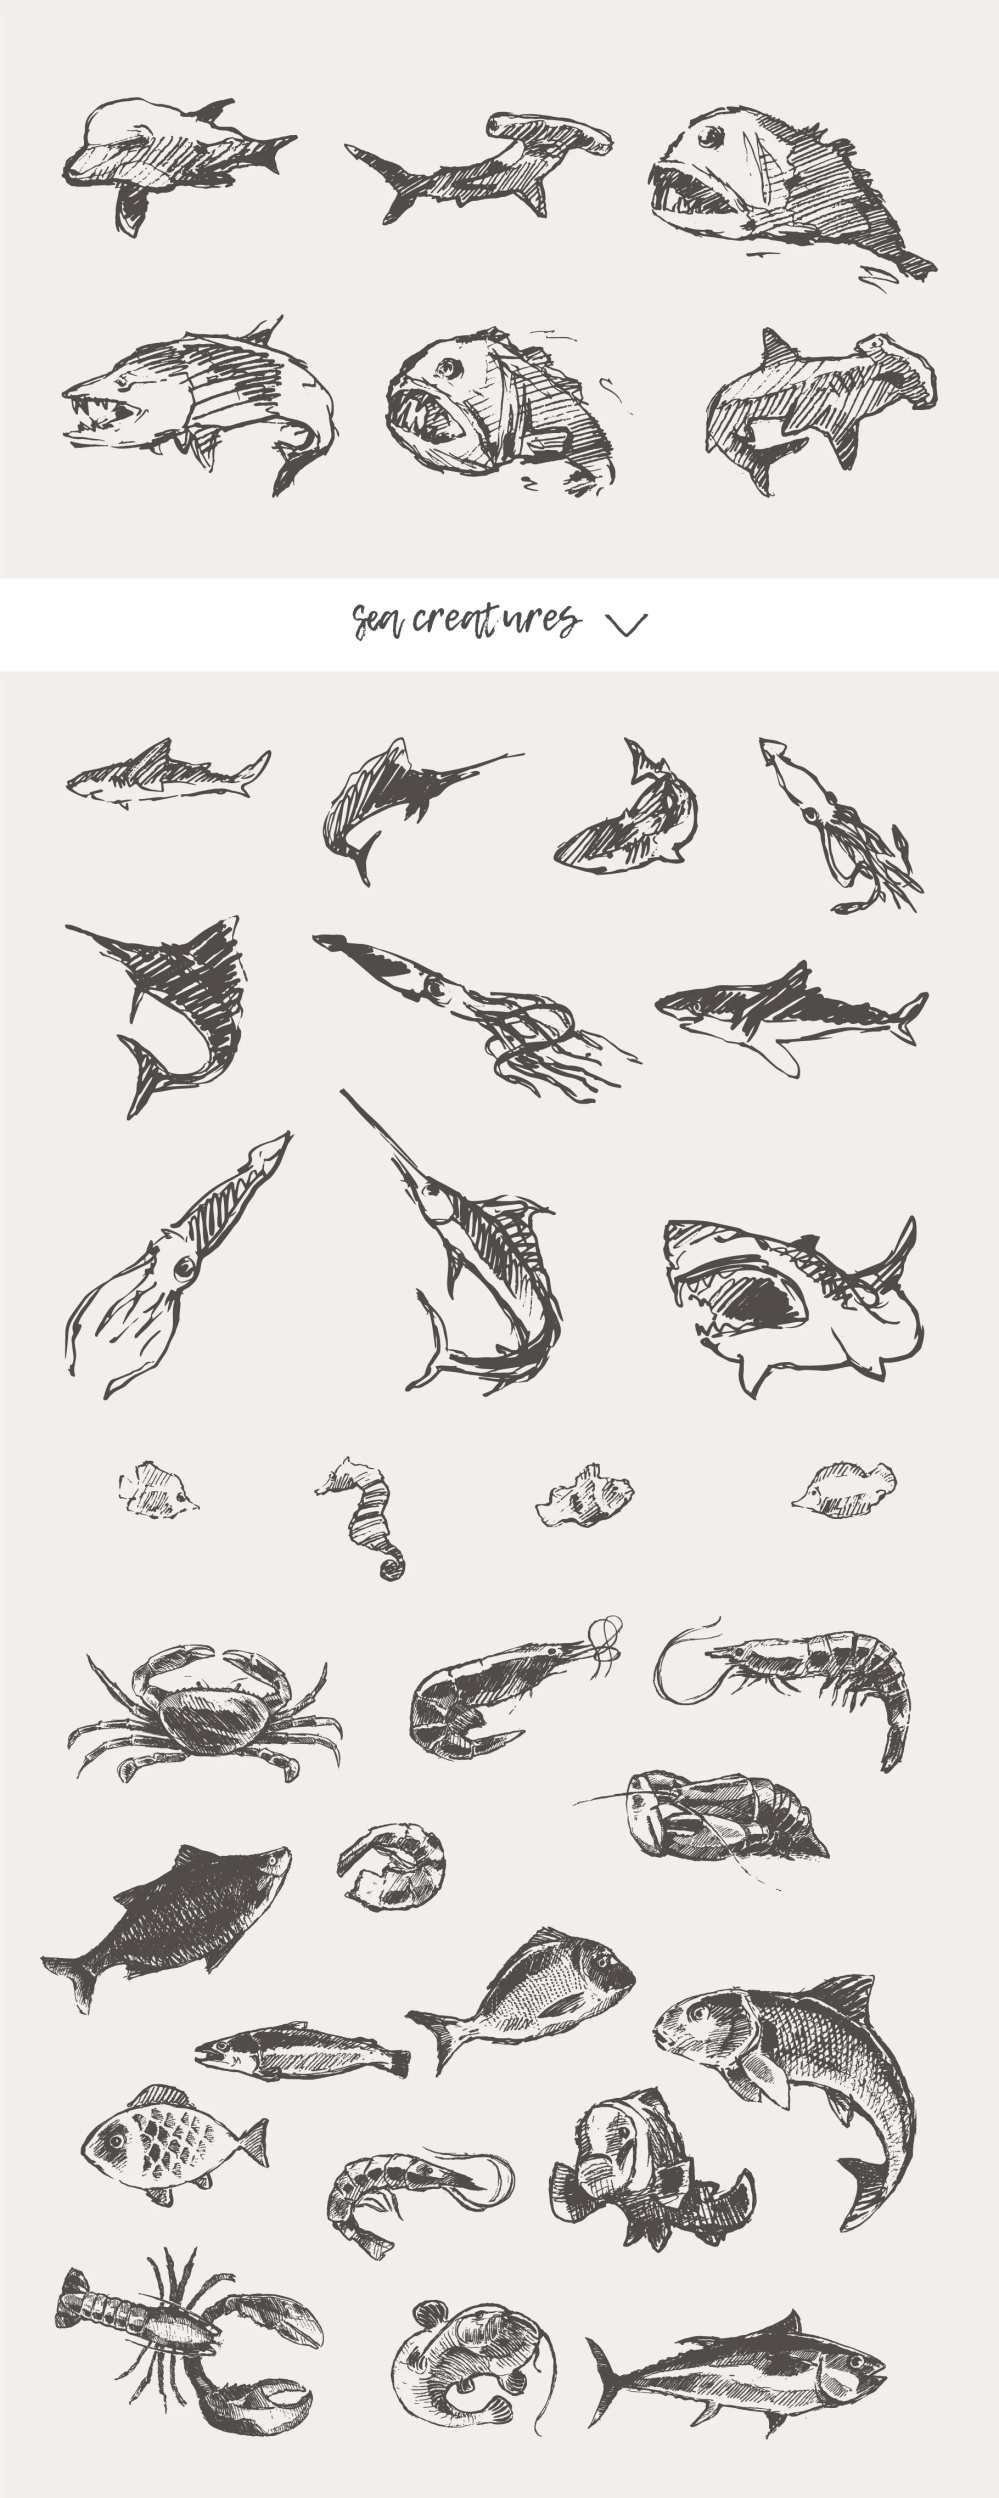 21种森林动物海洋生物插图矢量素材 图片素材 第15张